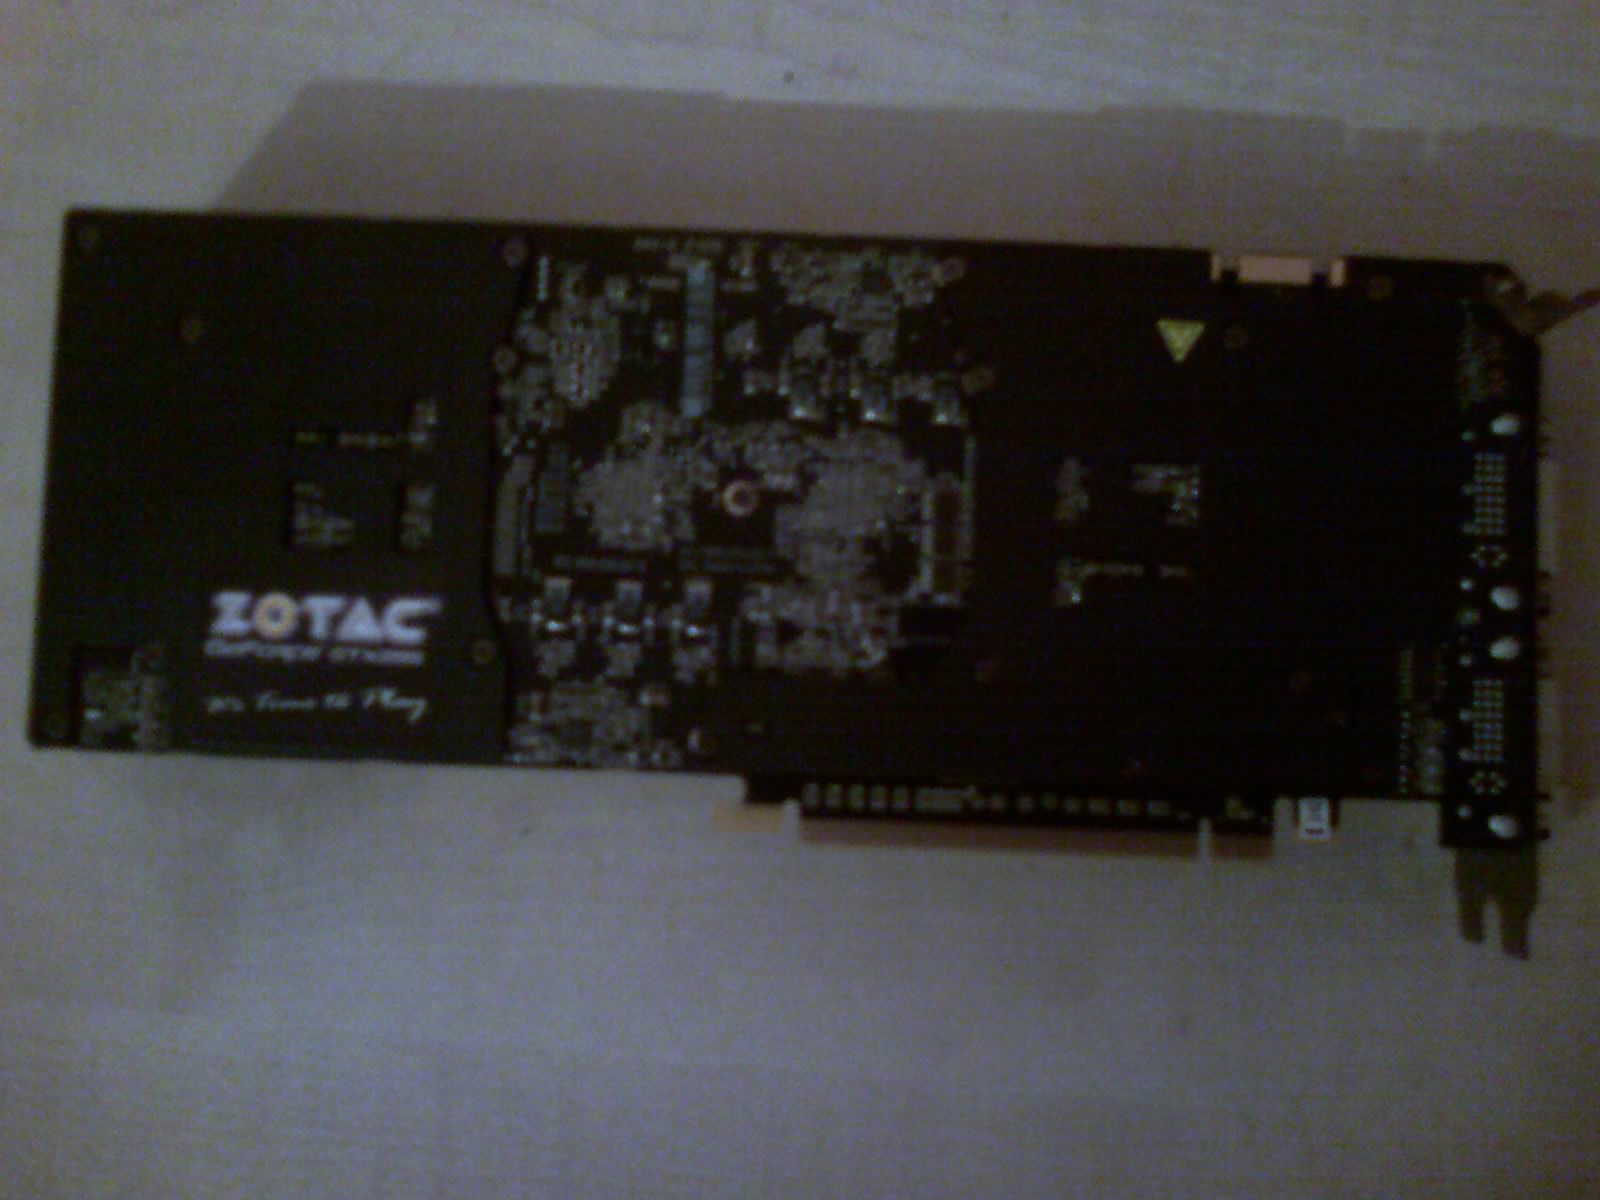  ZOTAC GTX 295 TEK PCB